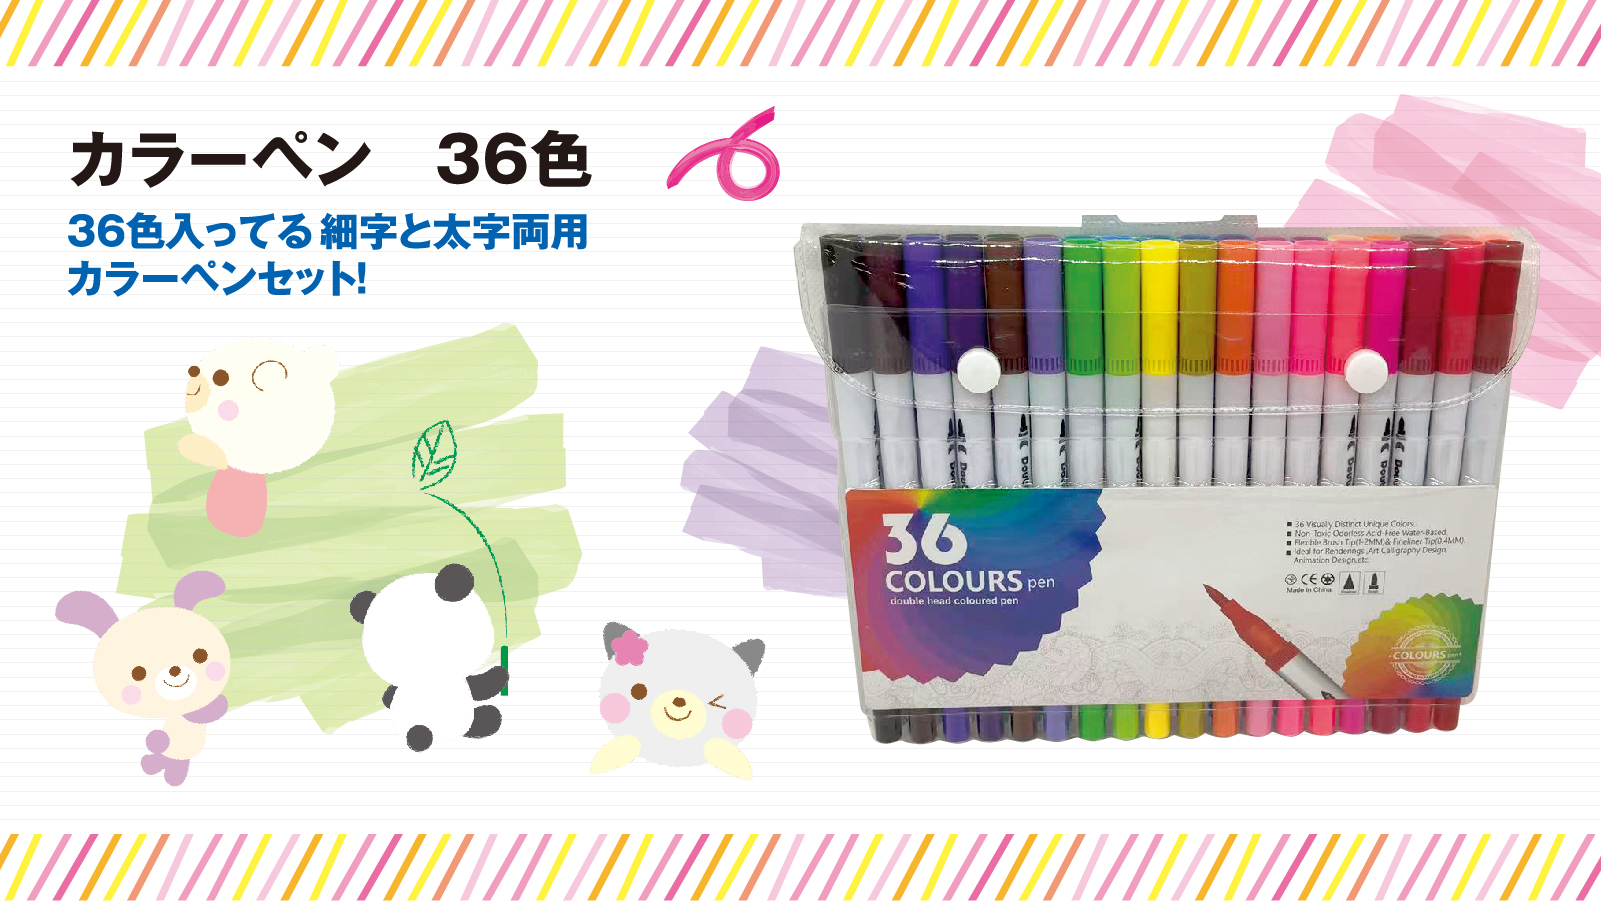 カラーペン(36色) 細字と太字両用カラーペンセット オフィス用品 入学 